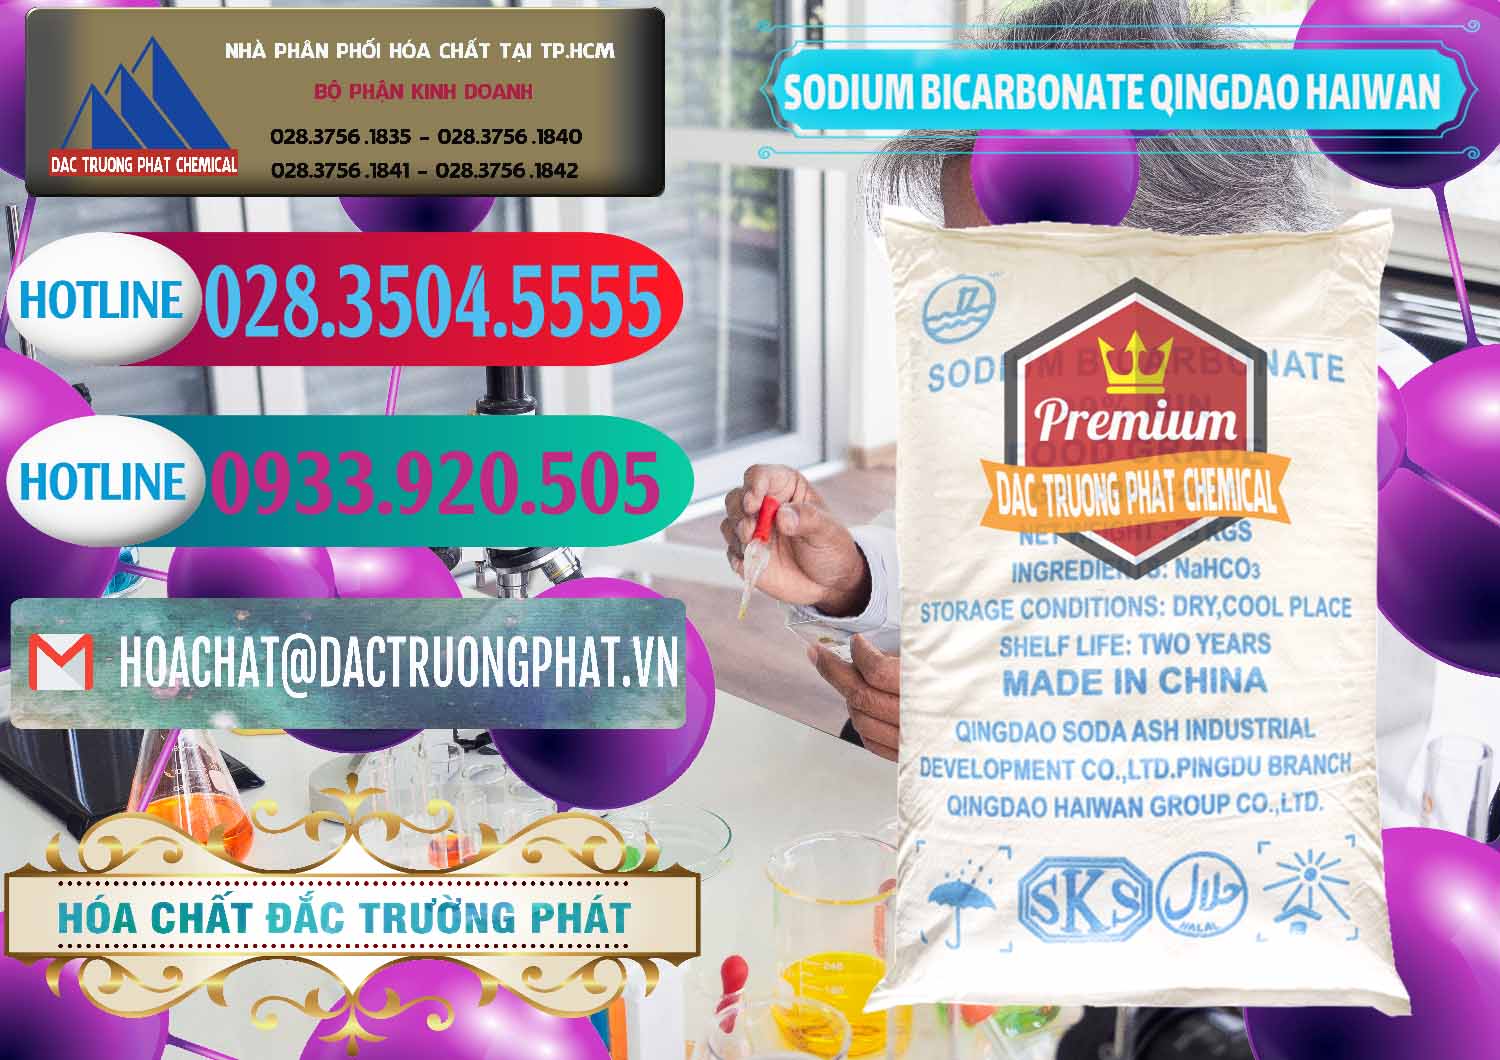 Nơi cung ứng & bán Sodium Bicarbonate – Bicar NaHCO3 Food Grade Qingdao Haiwan Trung Quốc China - 0258 - Chuyên bán và phân phối hóa chất tại TP.HCM - truongphat.vn